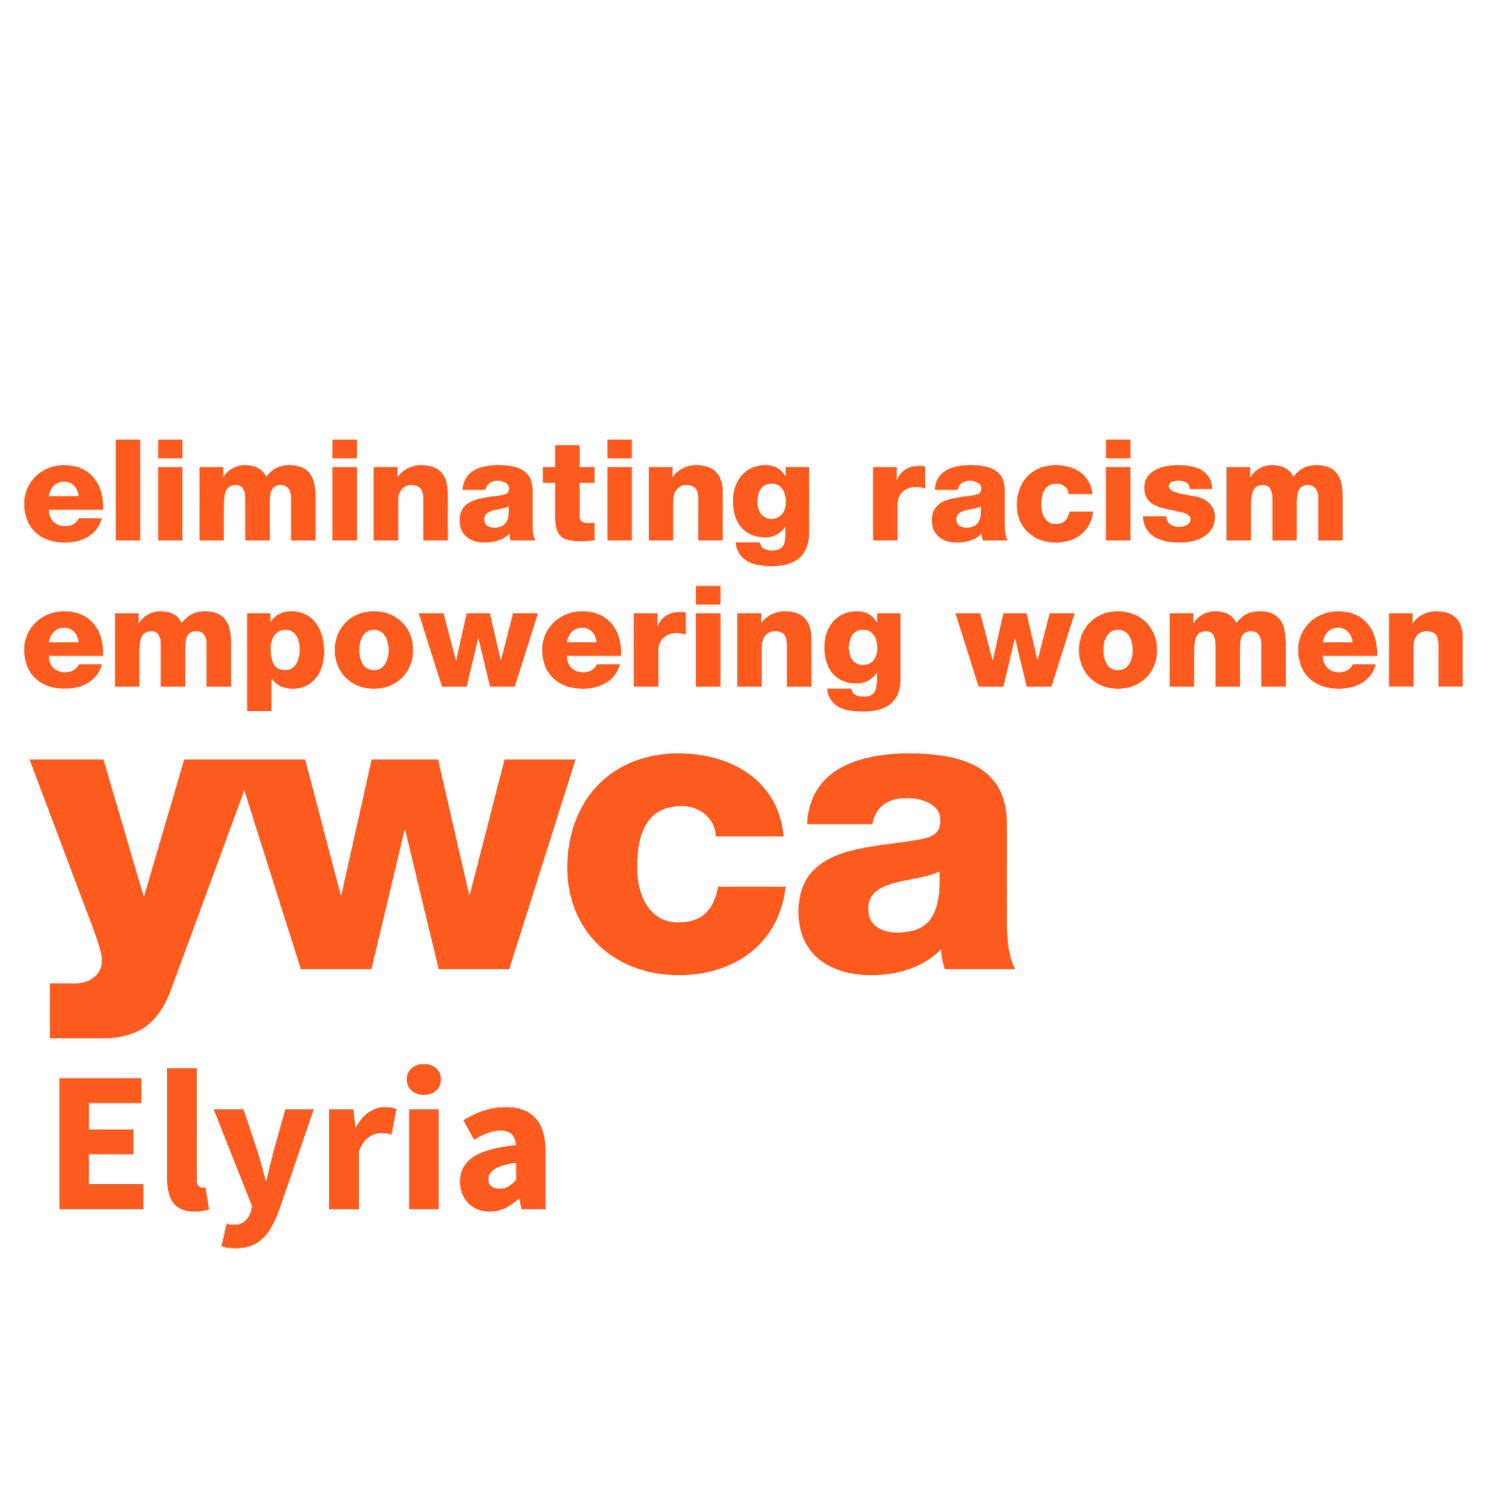 YWCA Elyria